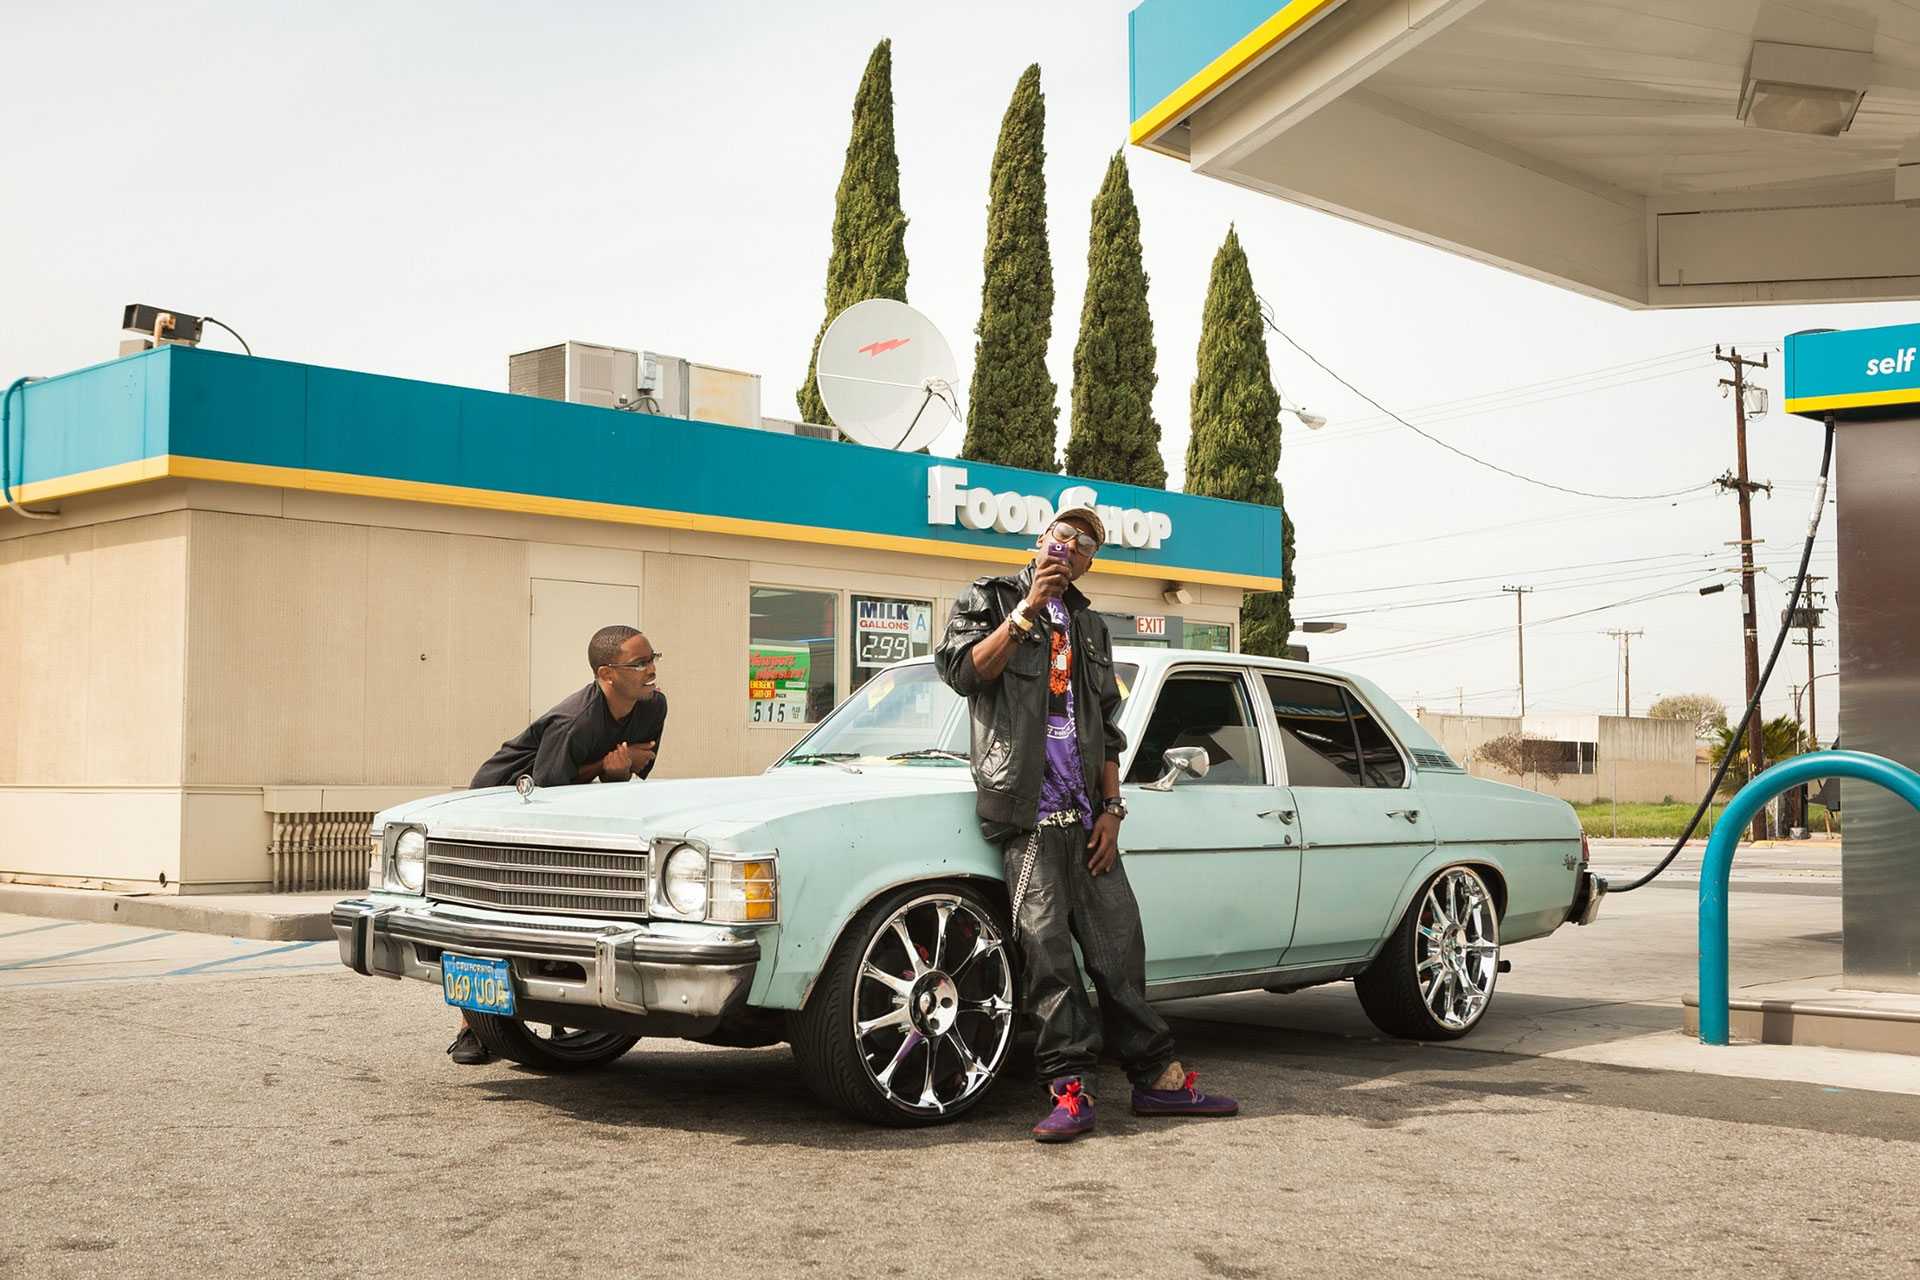 منظره شهری از نیویورک دو جوان سیاه پوست در یک پمپ بنزین